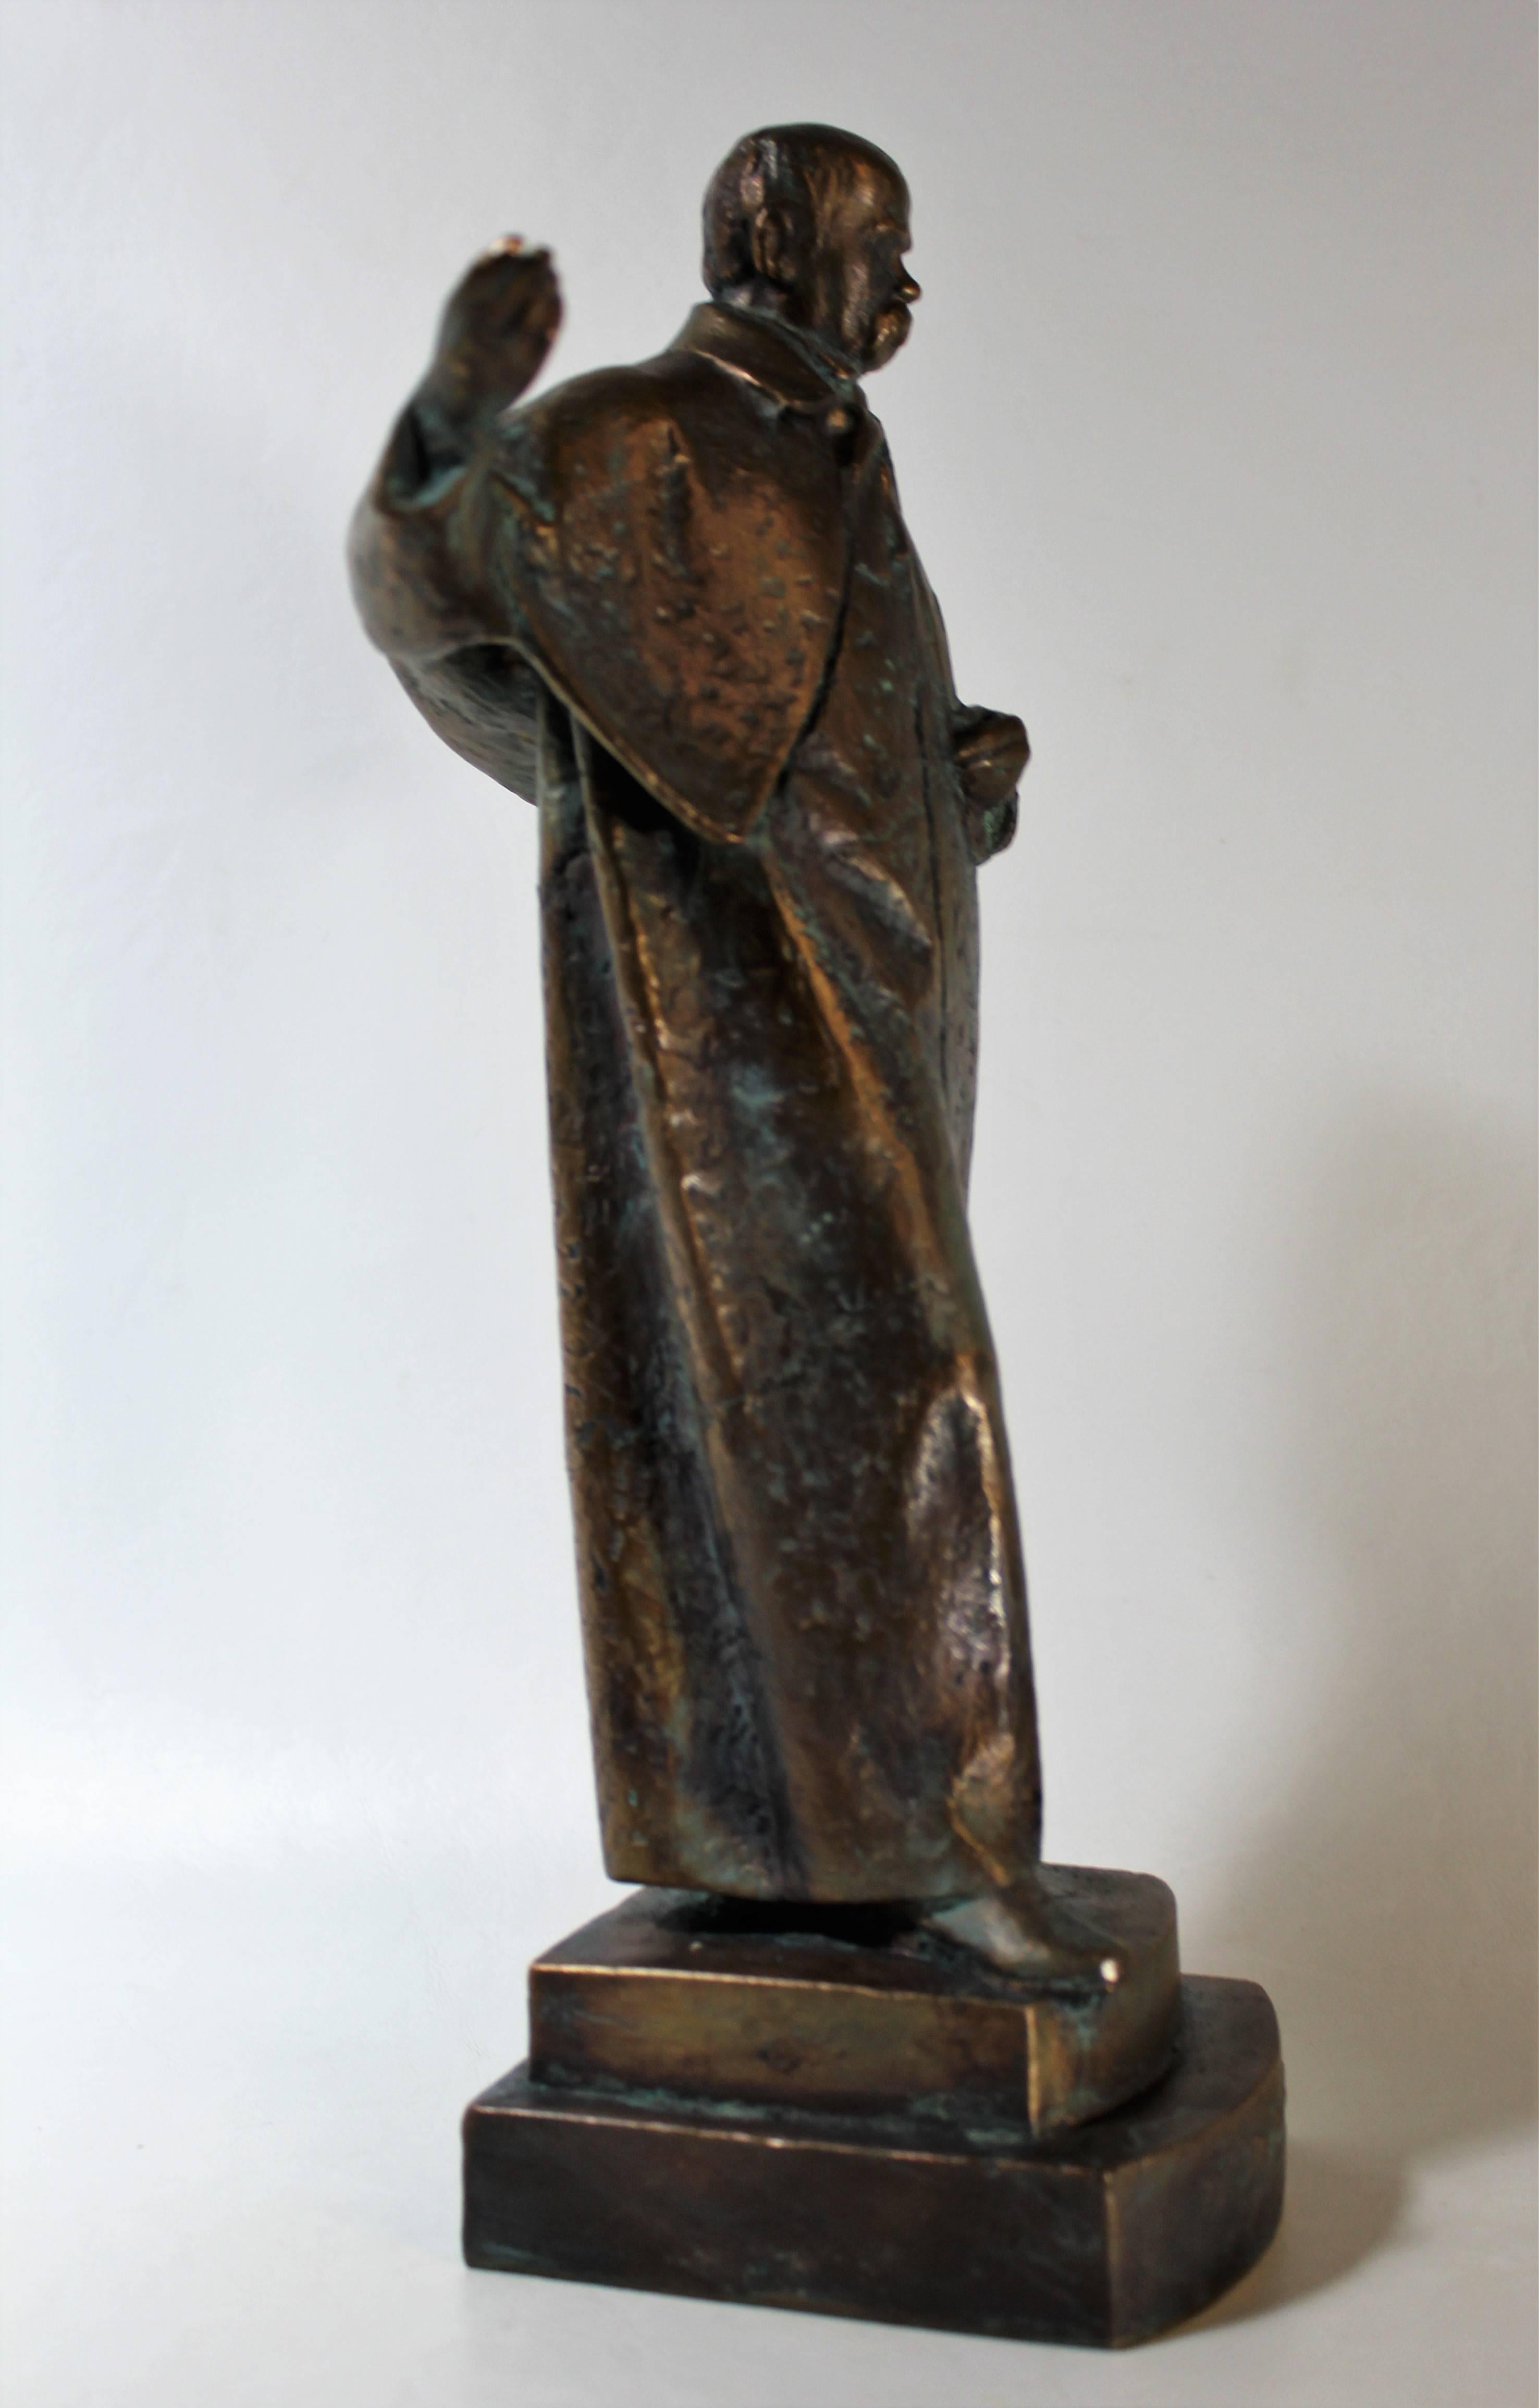 shevchenko statue